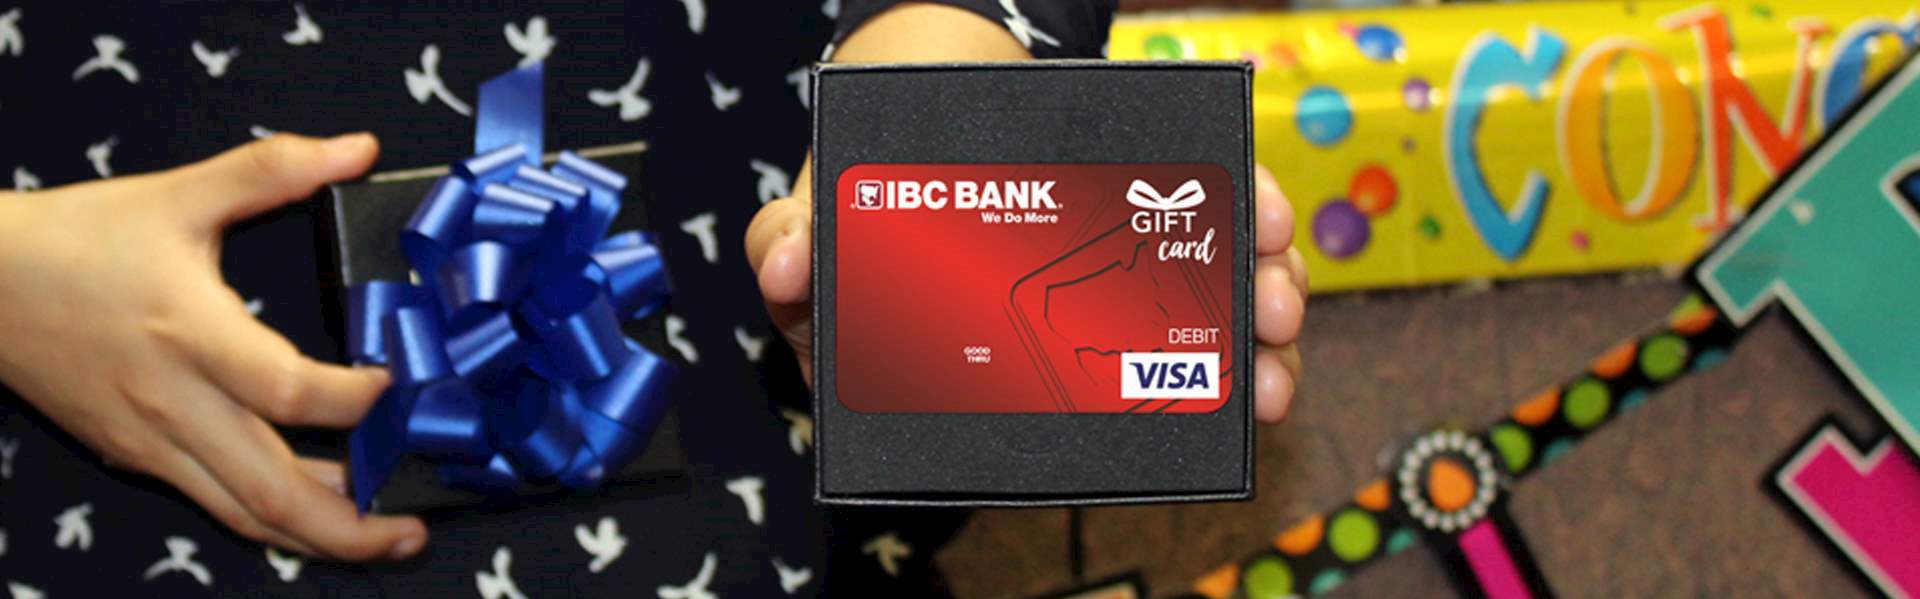 IBC Bank IBC Visa Gift Card